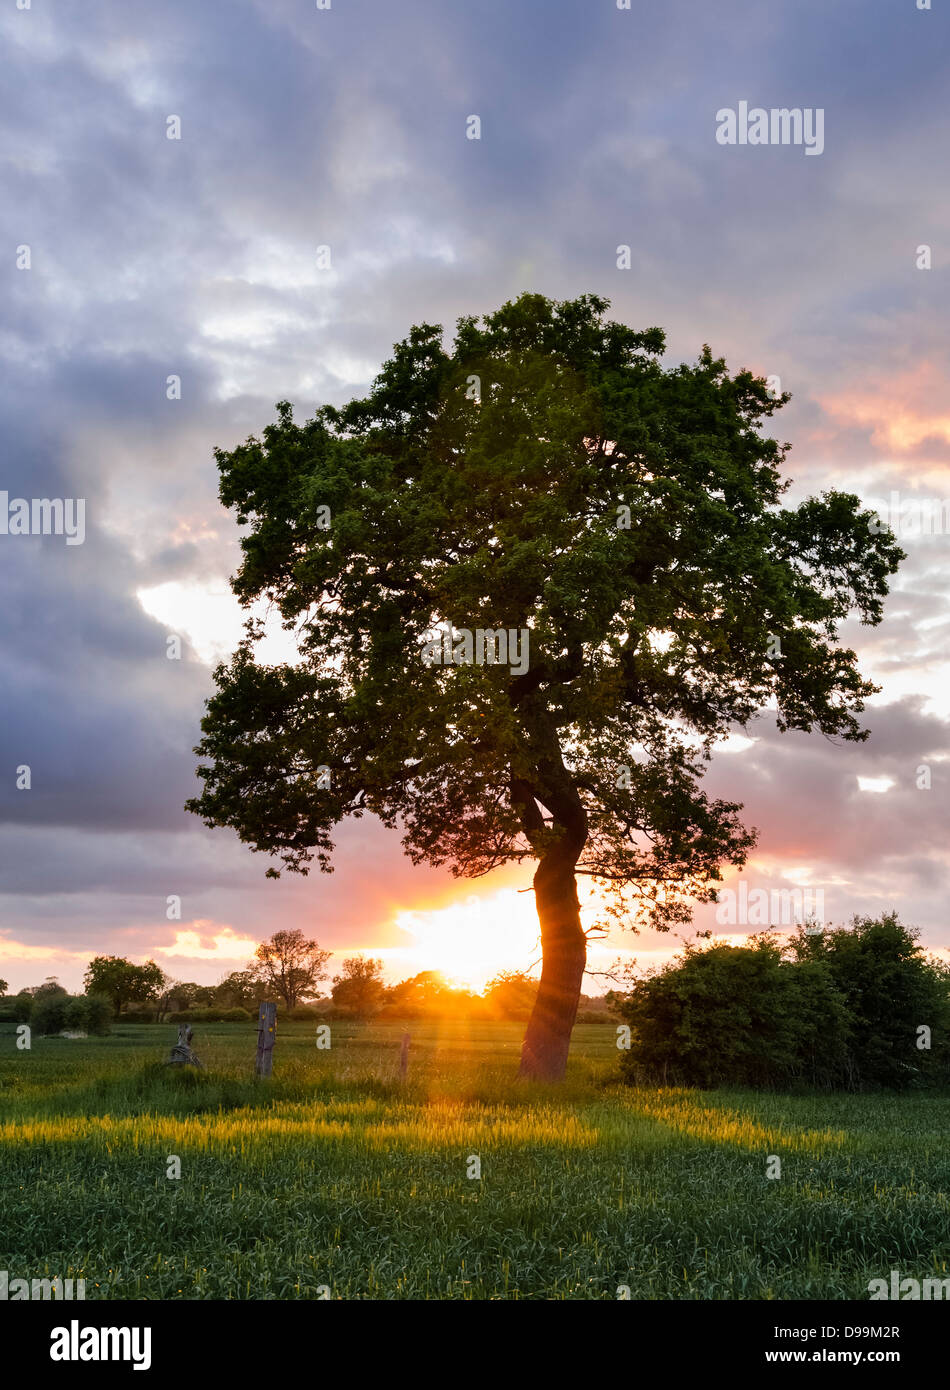 Einzigen Baum im Land Felder mit Sonnenuntergang am Horizont im Hintergrund Stockfoto